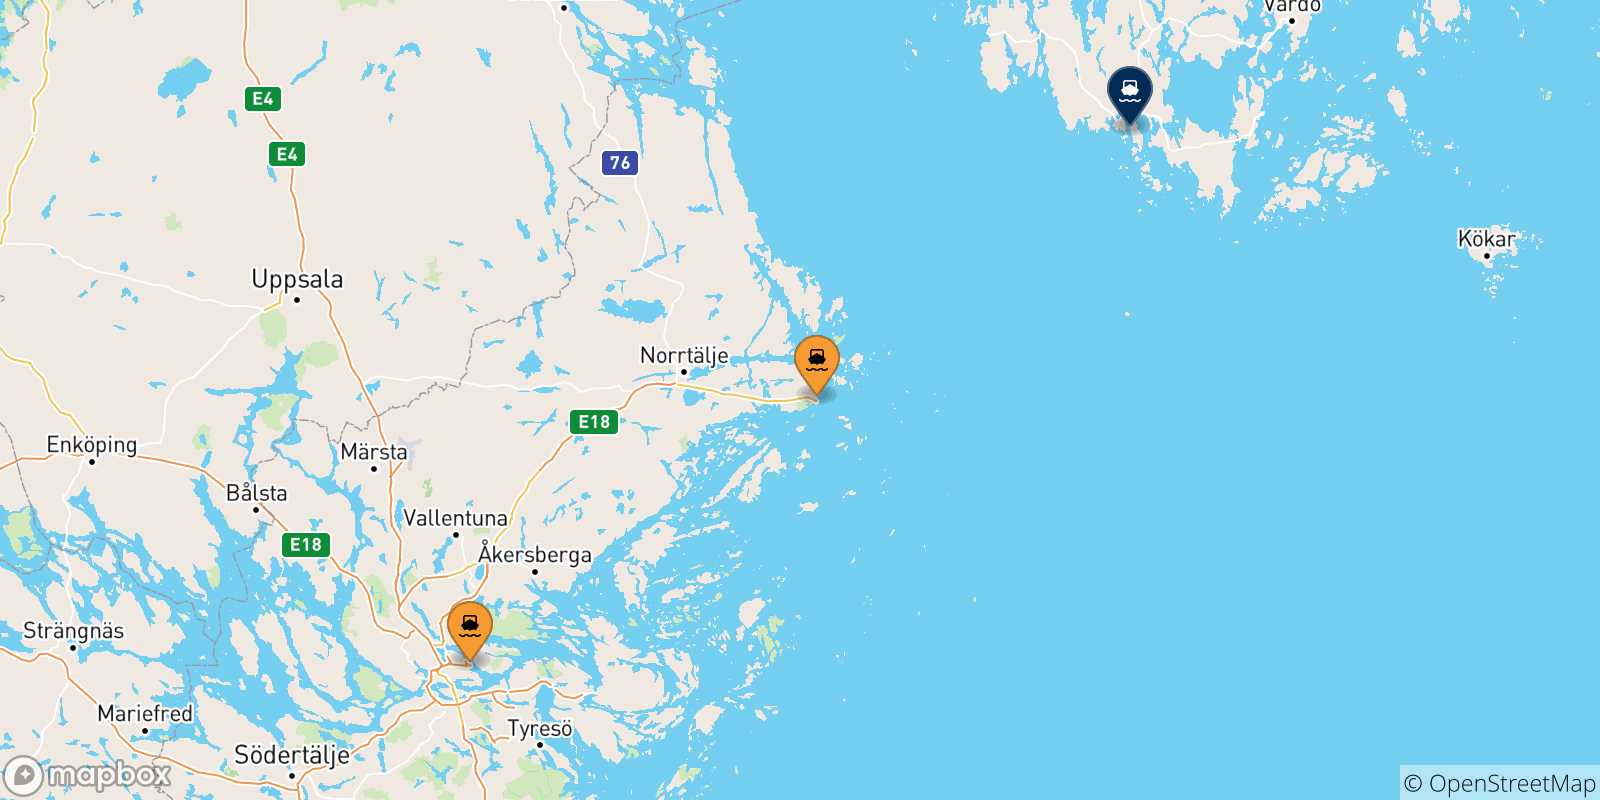 Mappa delle possibili rotte tra la Svezia e Mariehamn